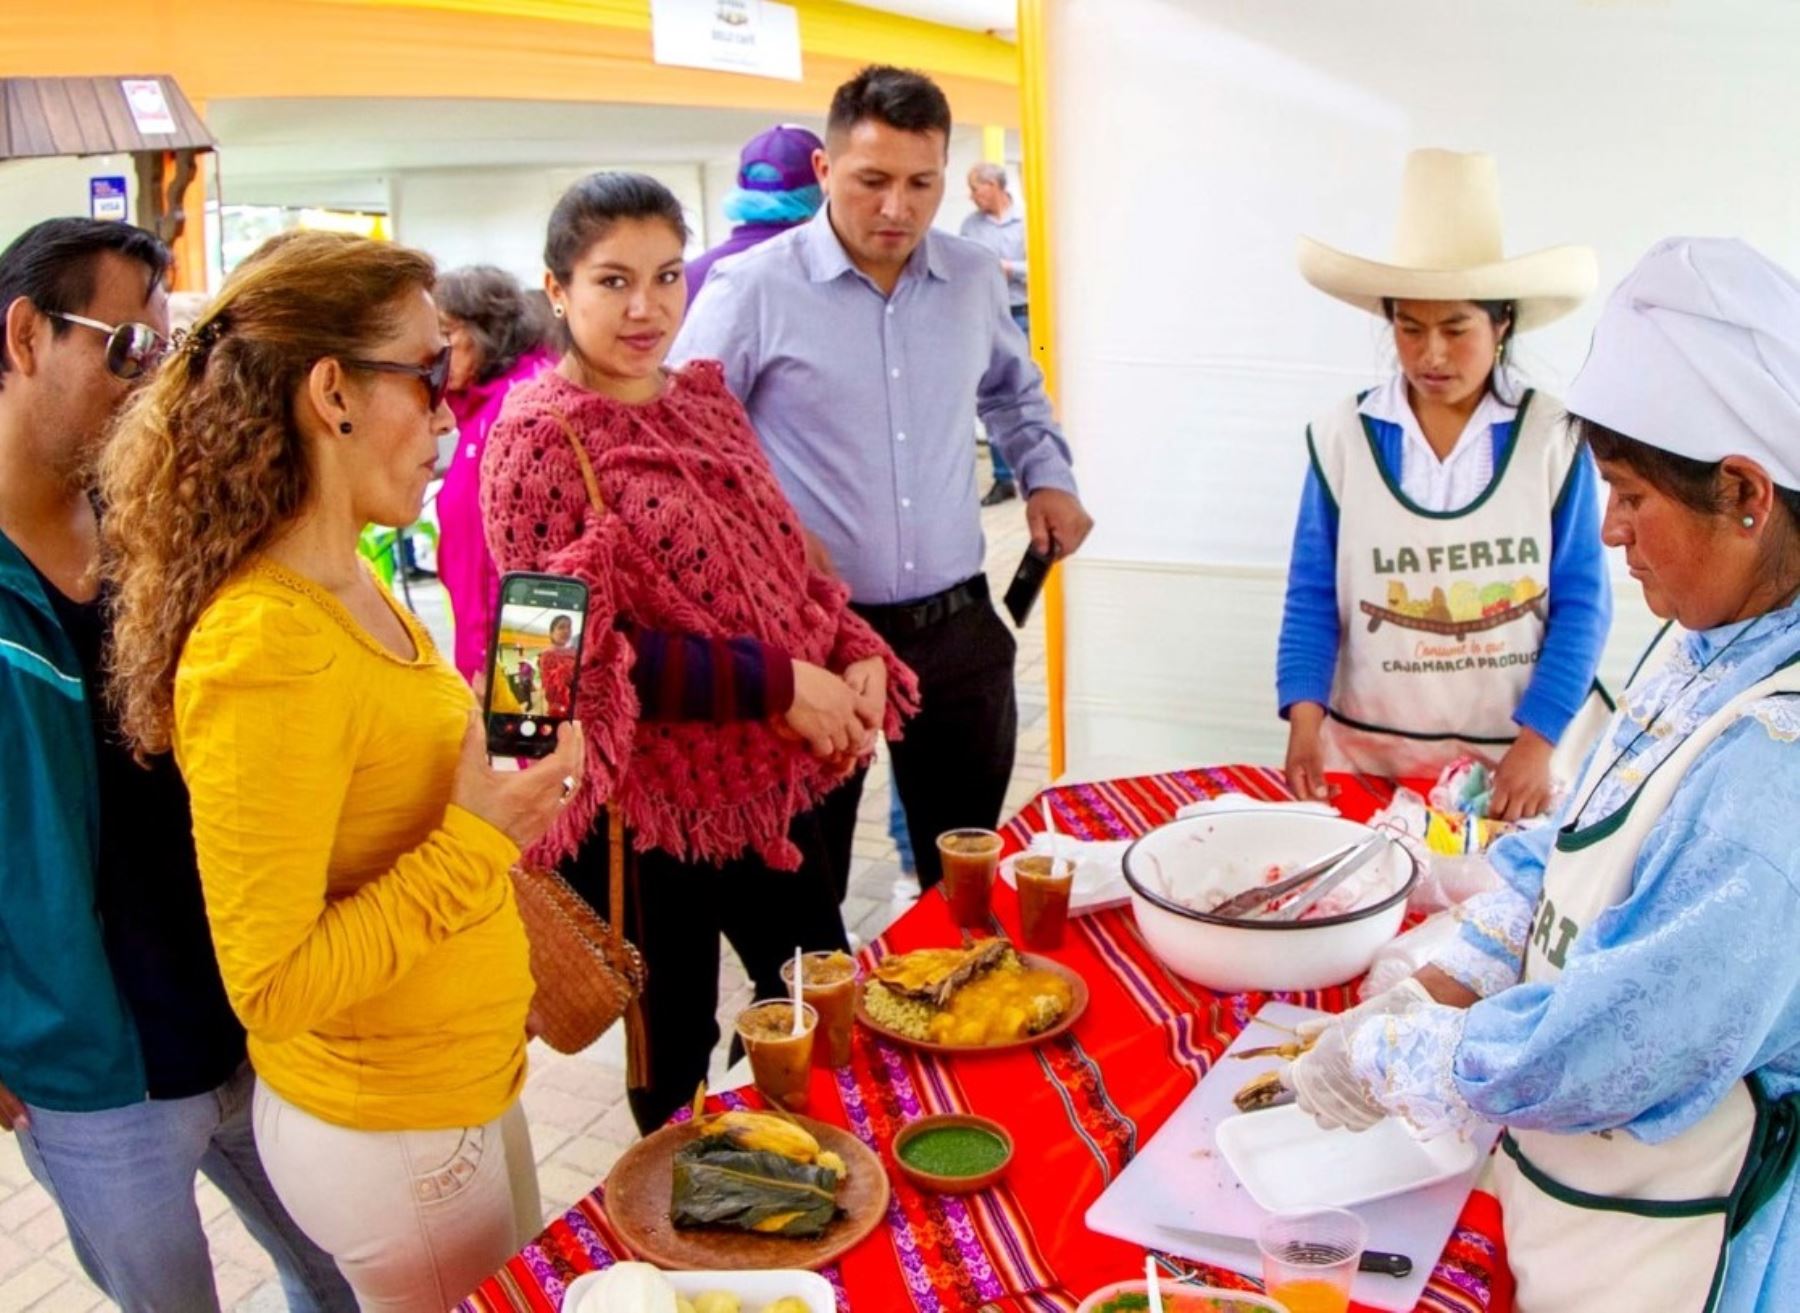 El complejo Qhapaq Ñan de Cajamarca reabre sus puertas tras dos años de cierre por la pandemia de covid-19 y este fin de semana acogerá a productores locales para la feria “Consume lo que Cajamarca produce”. ANDINA/Difusión